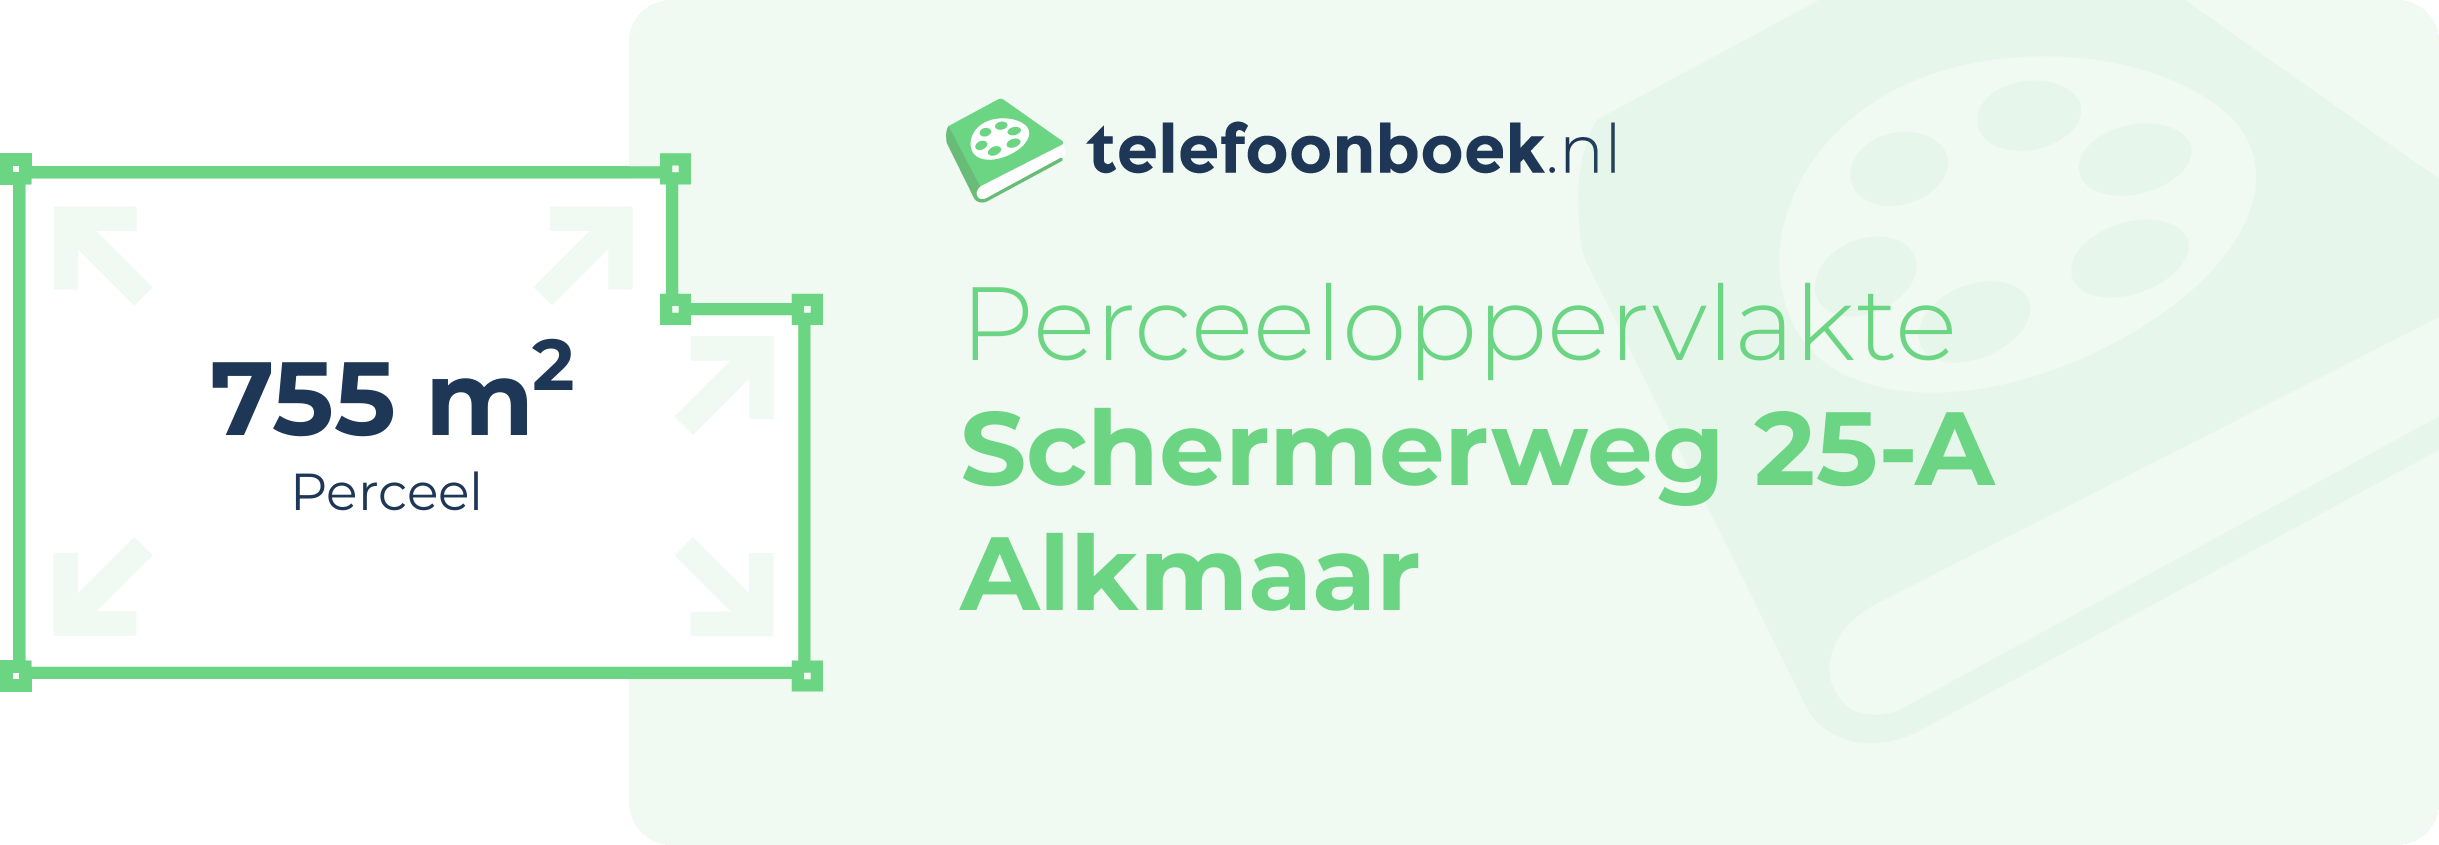 Perceeloppervlakte Schermerweg 25-A Alkmaar